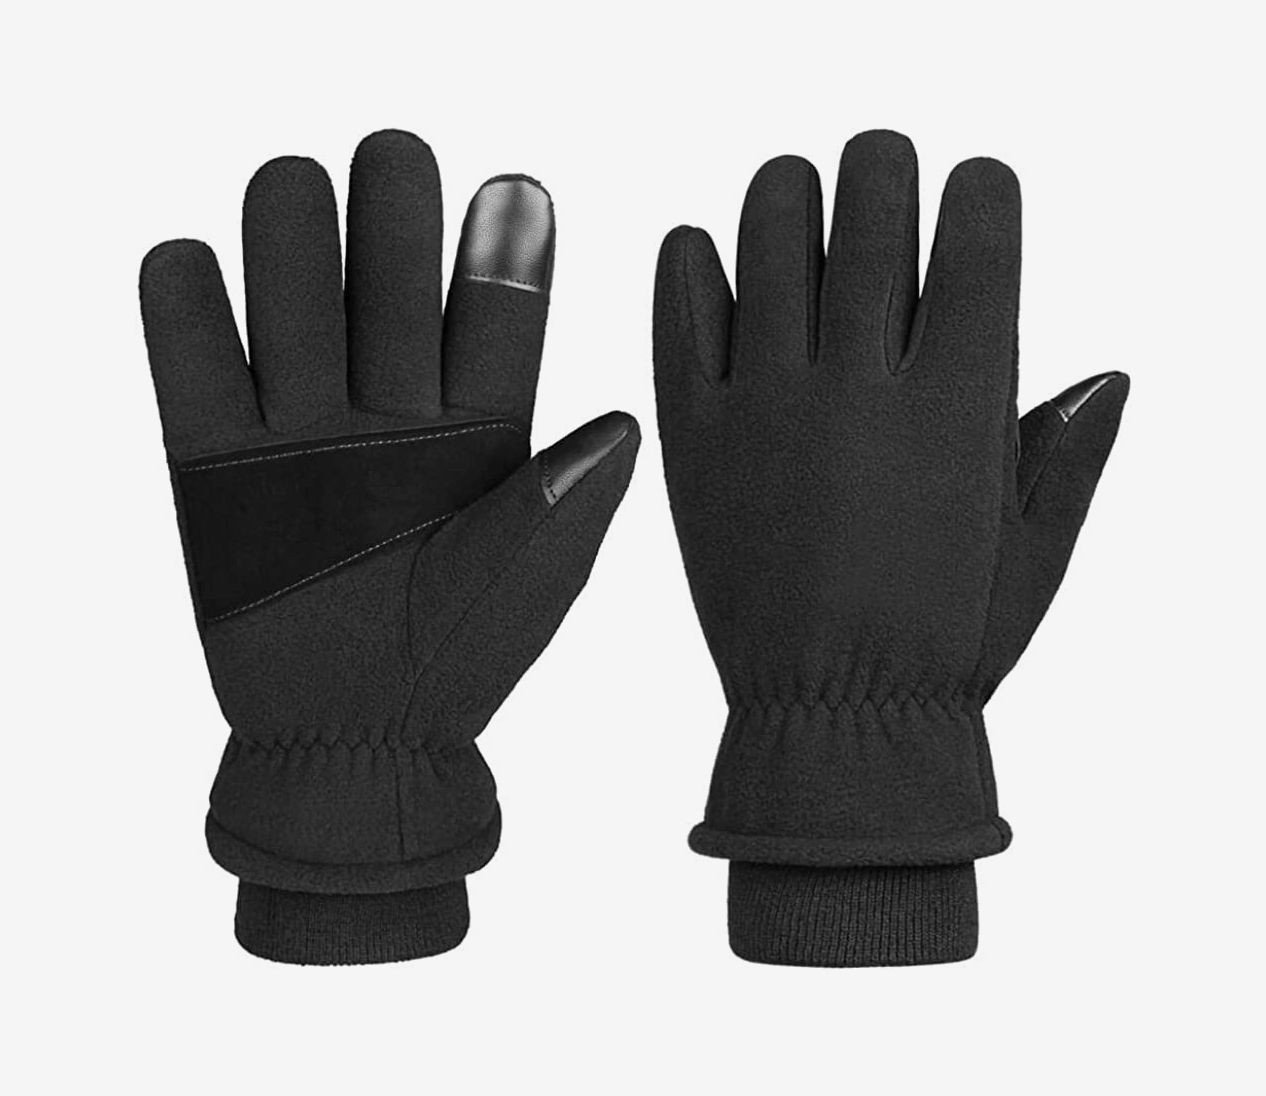 Details about   Practical Thicken Waterproof Winter Snow Warm Gloves Velvet Mitten For Women Men 